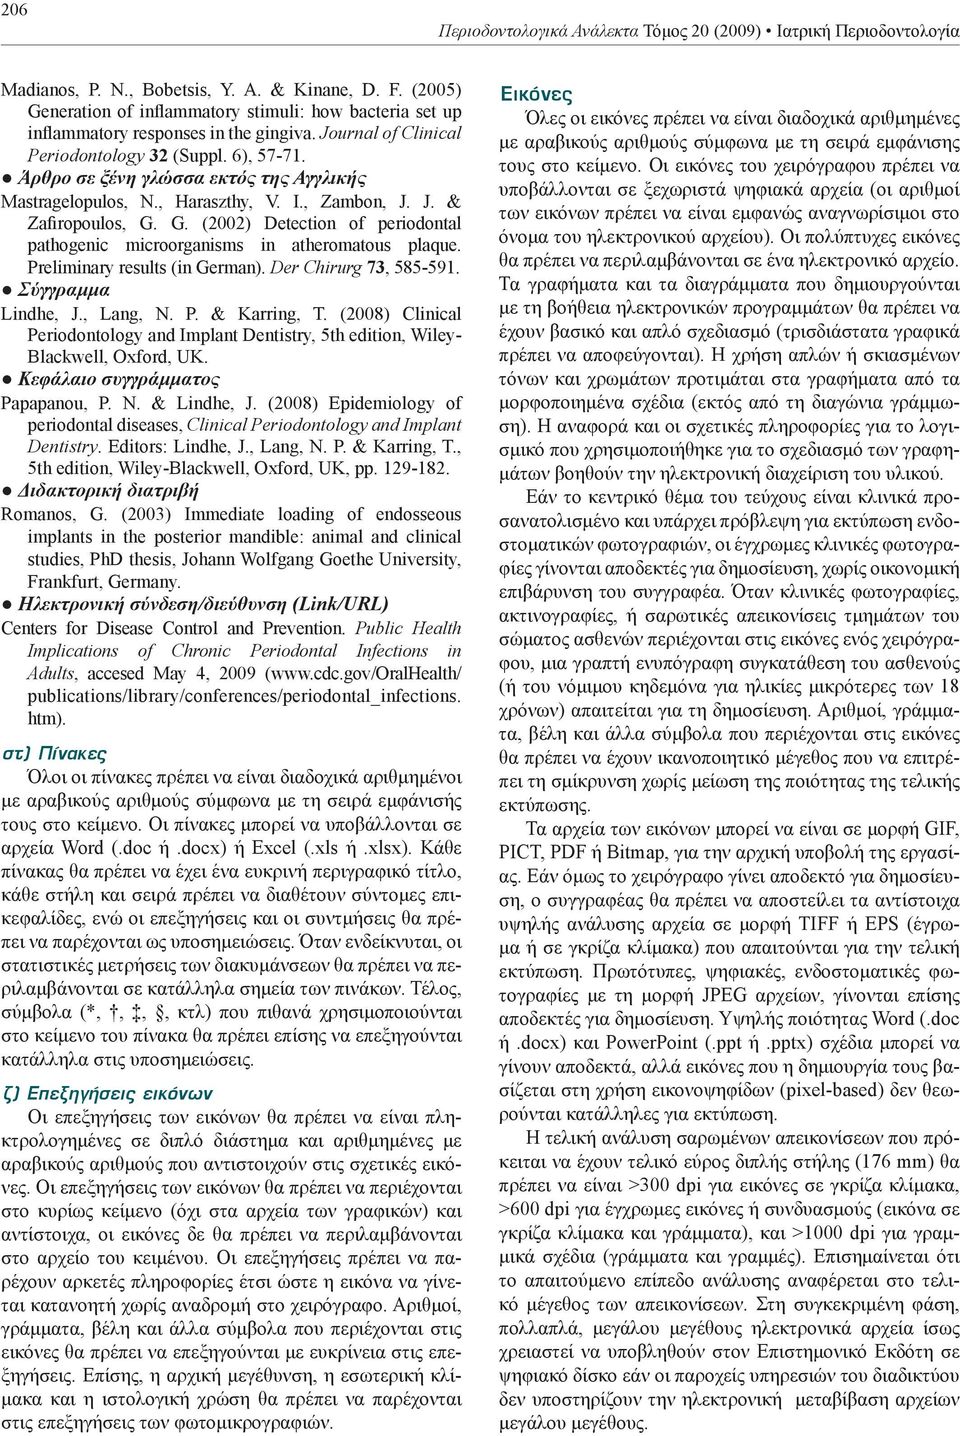 Άρθρο σε ξένη γλώσσα εκτός της Αγγλικής Mastragelopulos, N., Haraszthy, V. I., Zambon, J. J. & Zafiropoulos, G. G. (2002) Detection of periodontal pathogenic microorganisms in atheromatous plaque.